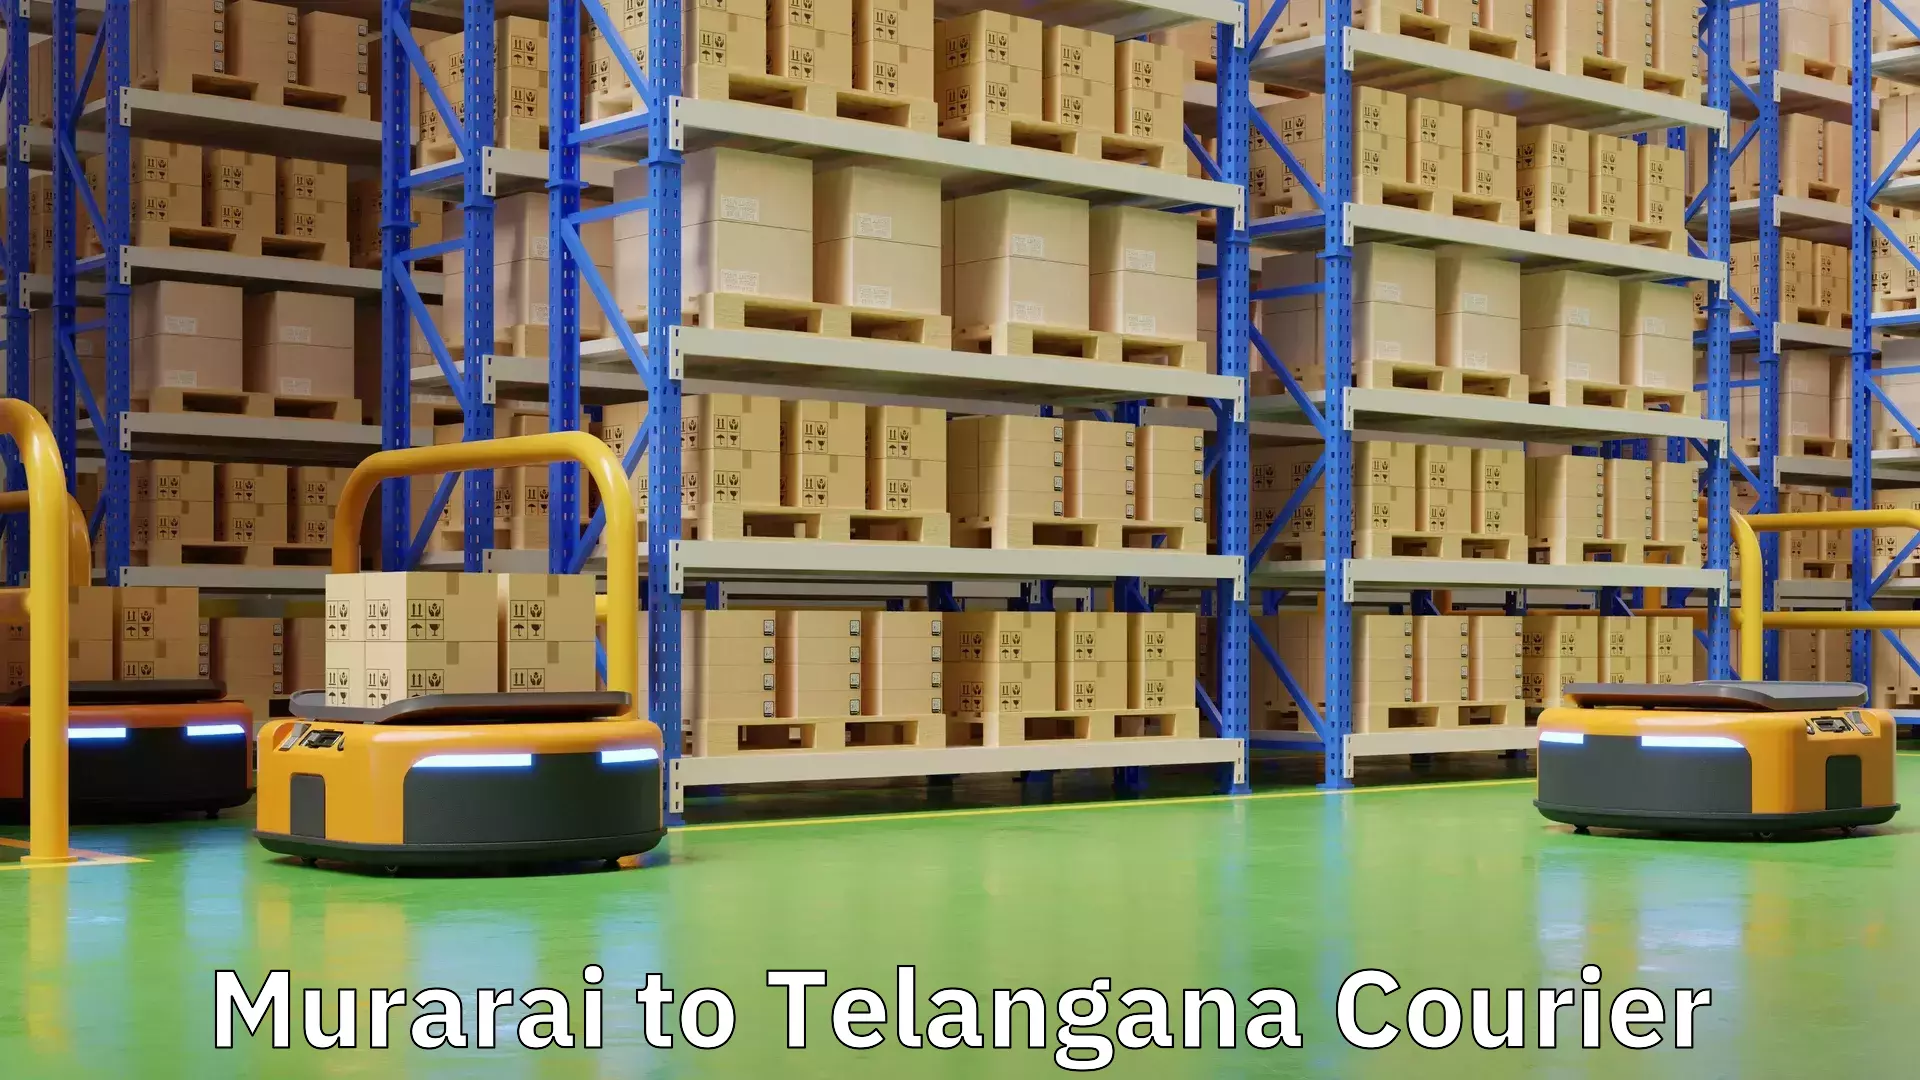 Local courier options Murarai to Telangana